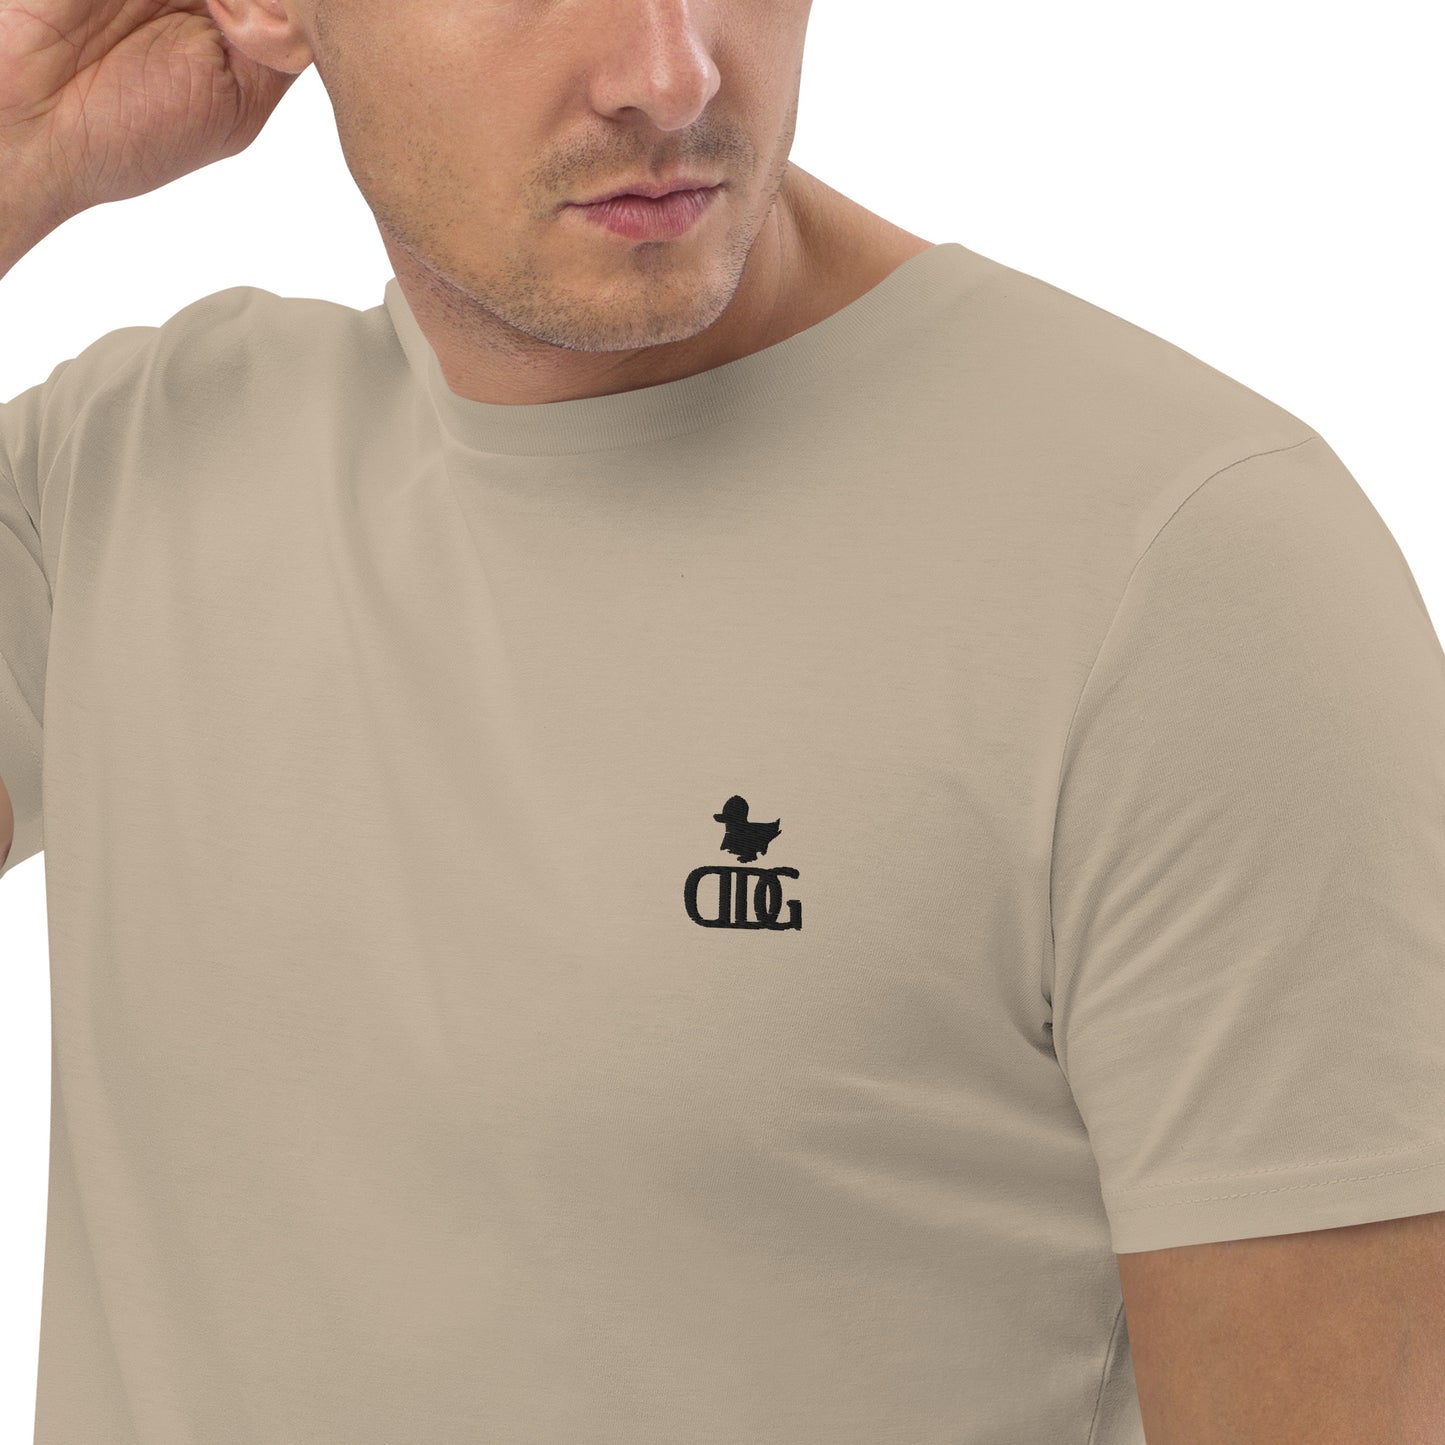 Men’s DDG cotton t-shirt